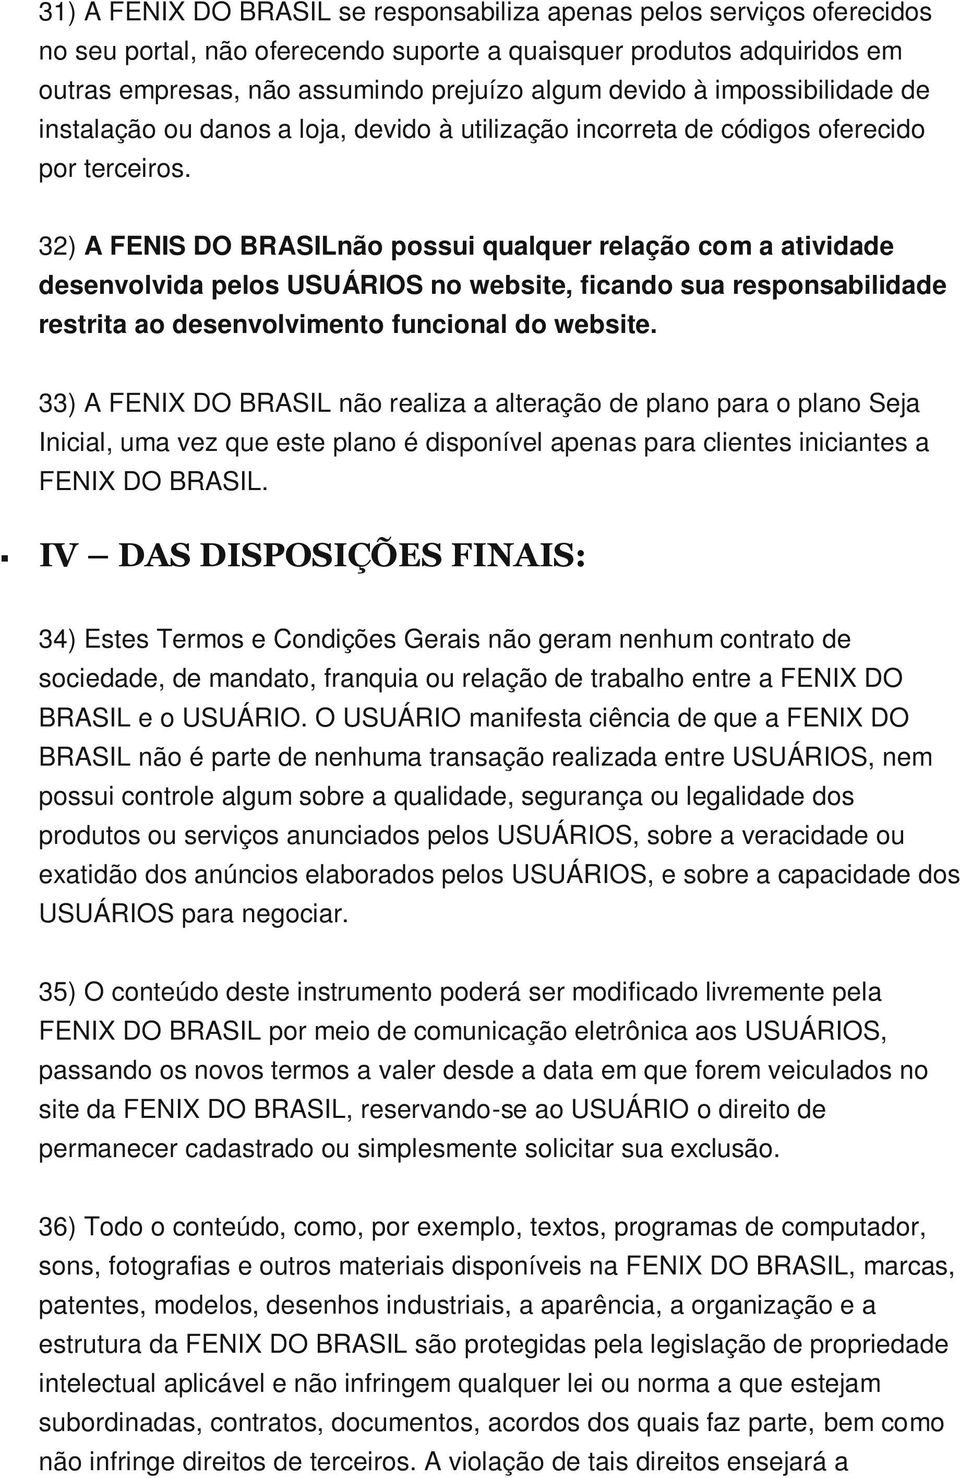 32) A FENIS DO BRASILnão possui qualquer relação com a atividade desenvolvida pelos USUÁRIOS no website, ficando sua responsabilidade restrita ao desenvolvimento funcional do website.